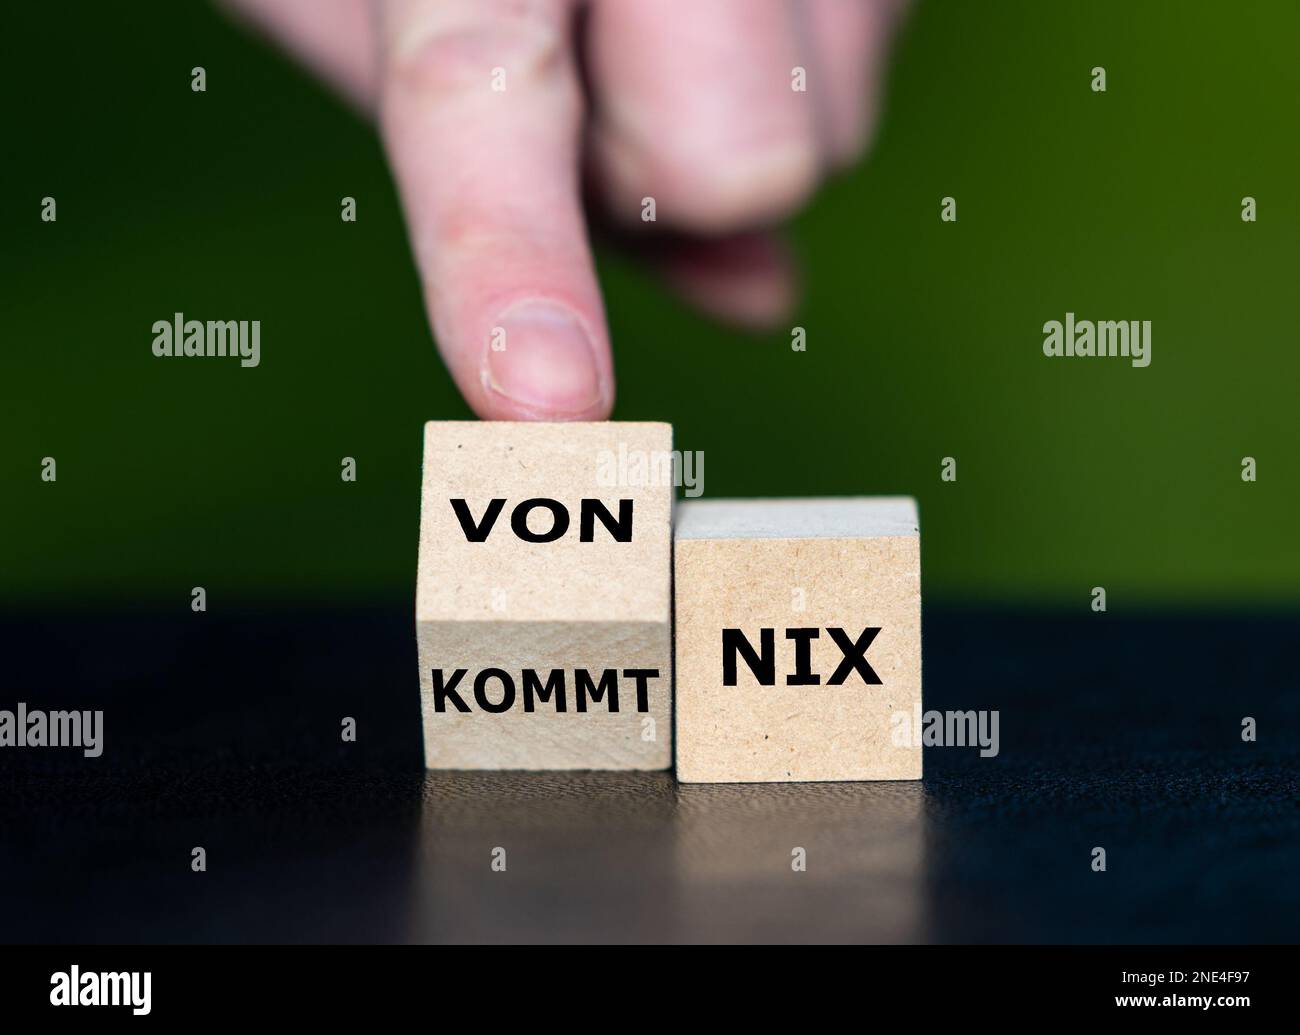 Holzwürfel bilden den deutschen Spruch „von nix kommt nix“ (wenn Sie nicht hart arbeiten, sehen Sie keine Ergebnisse). Stockfoto